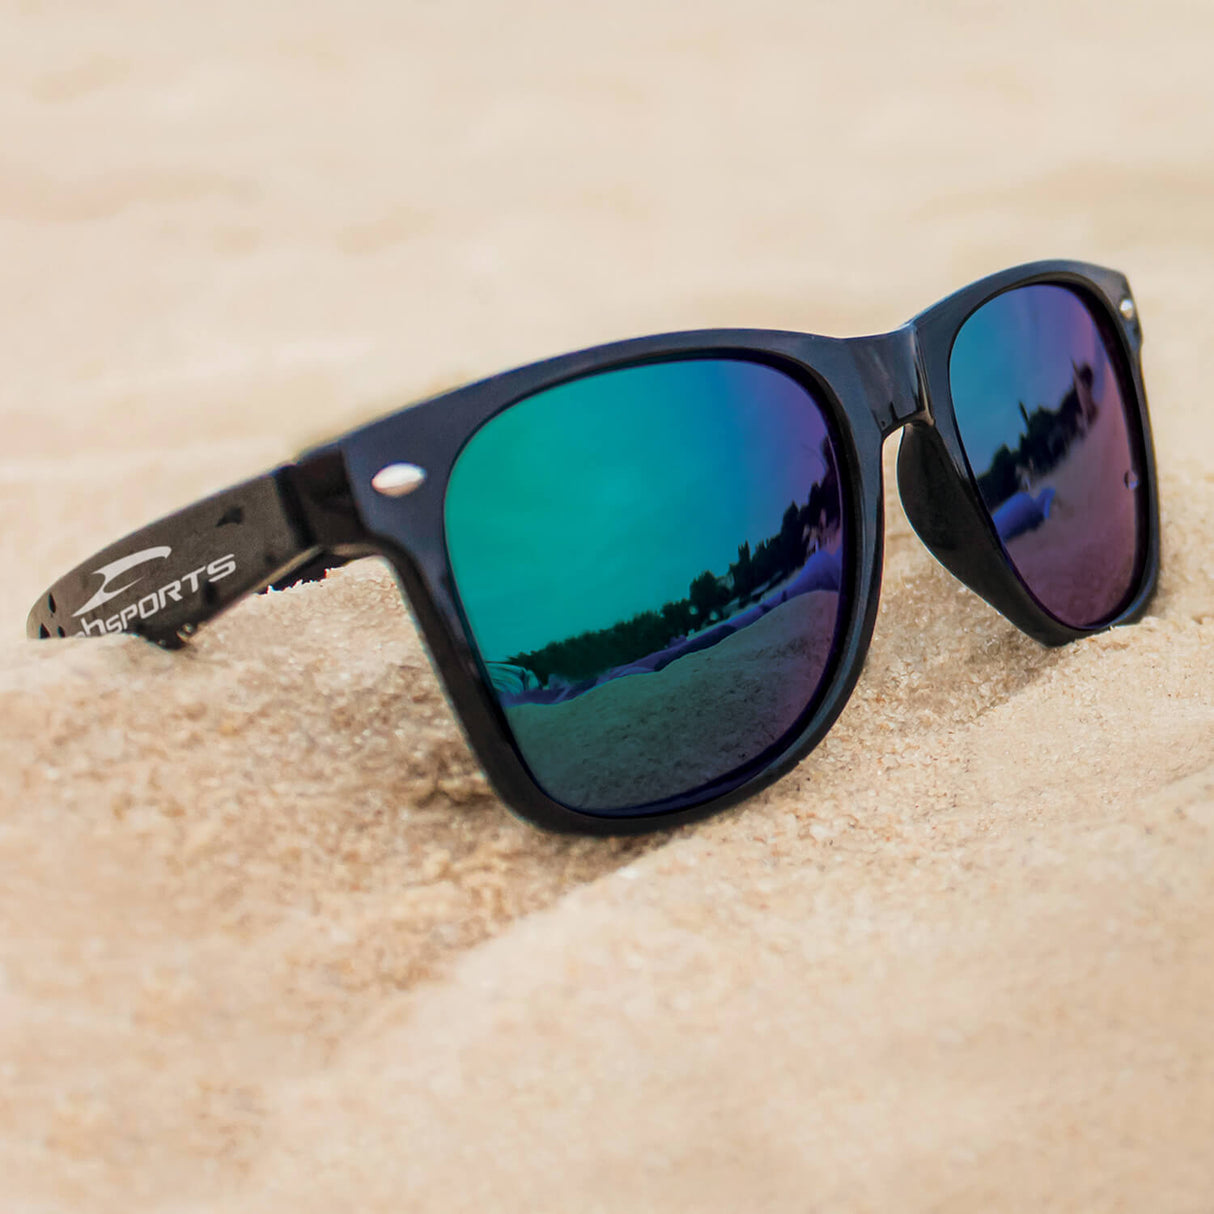 Bondi Premium Sunglasses - Printed